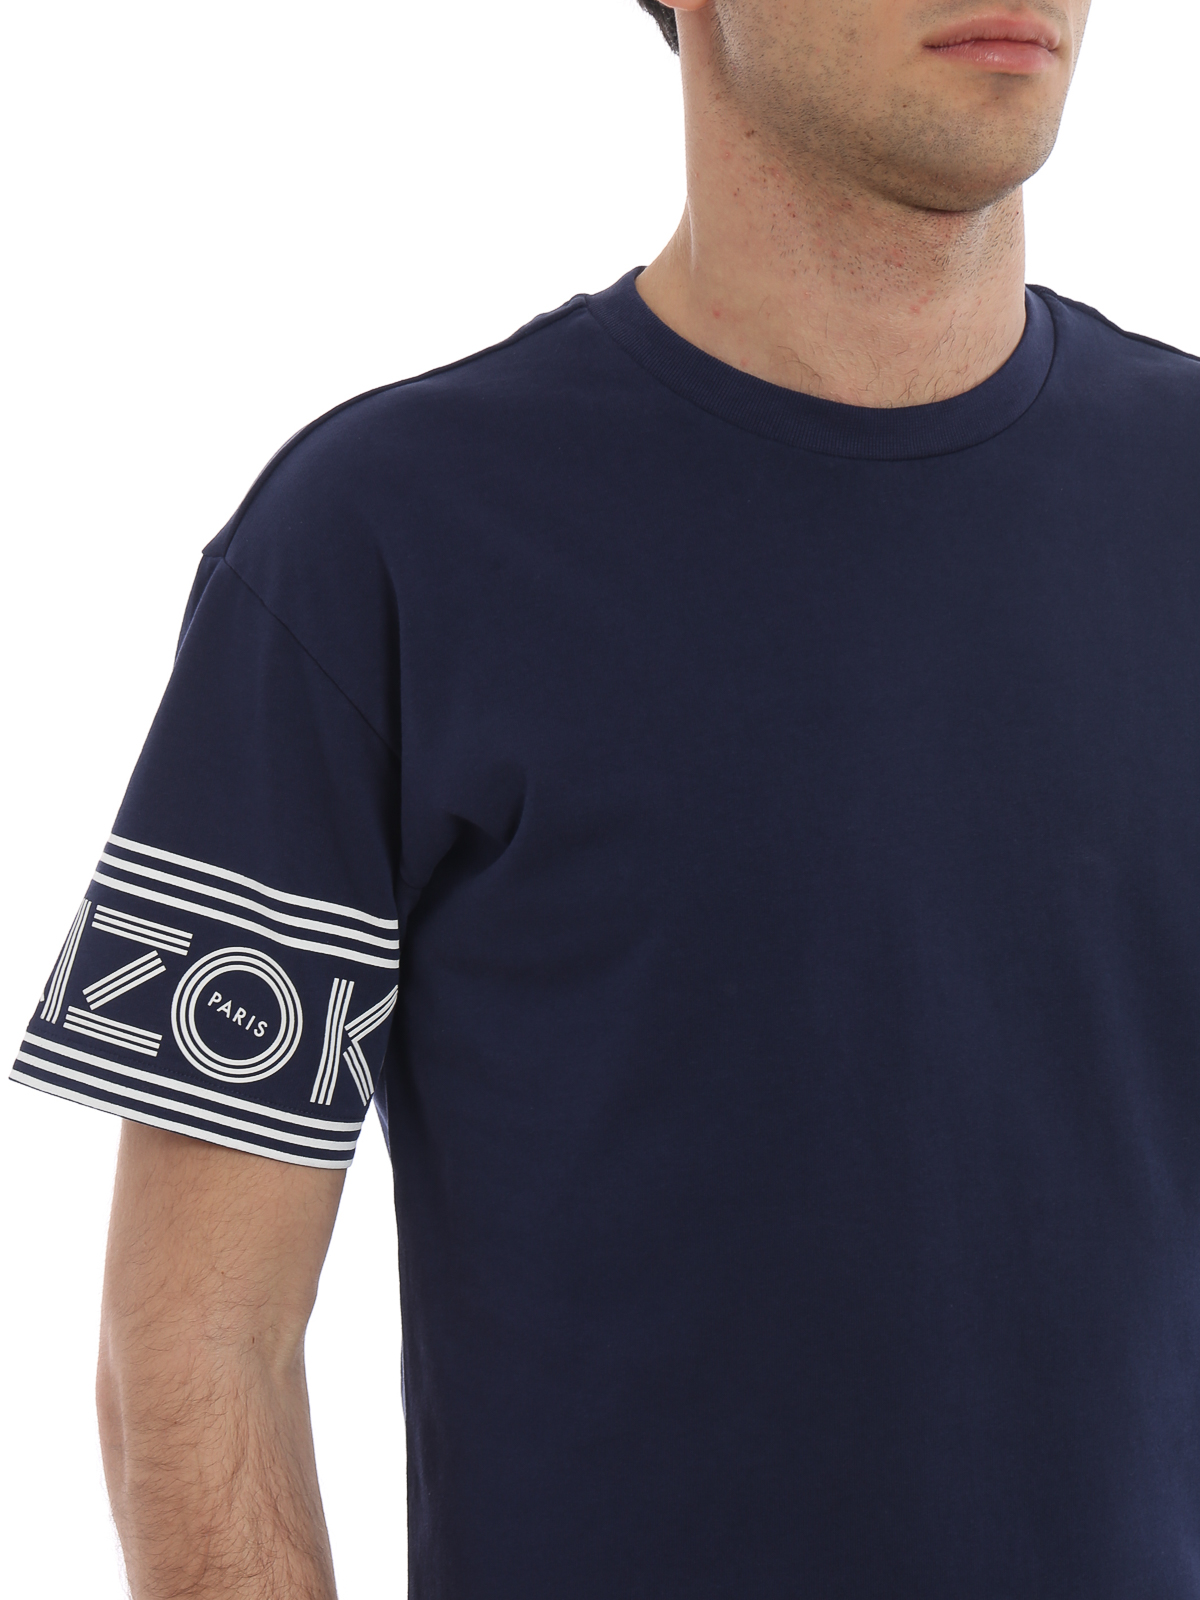 Kenzo - Kenzo Sport blue T-shirt - F005TS0434BD78